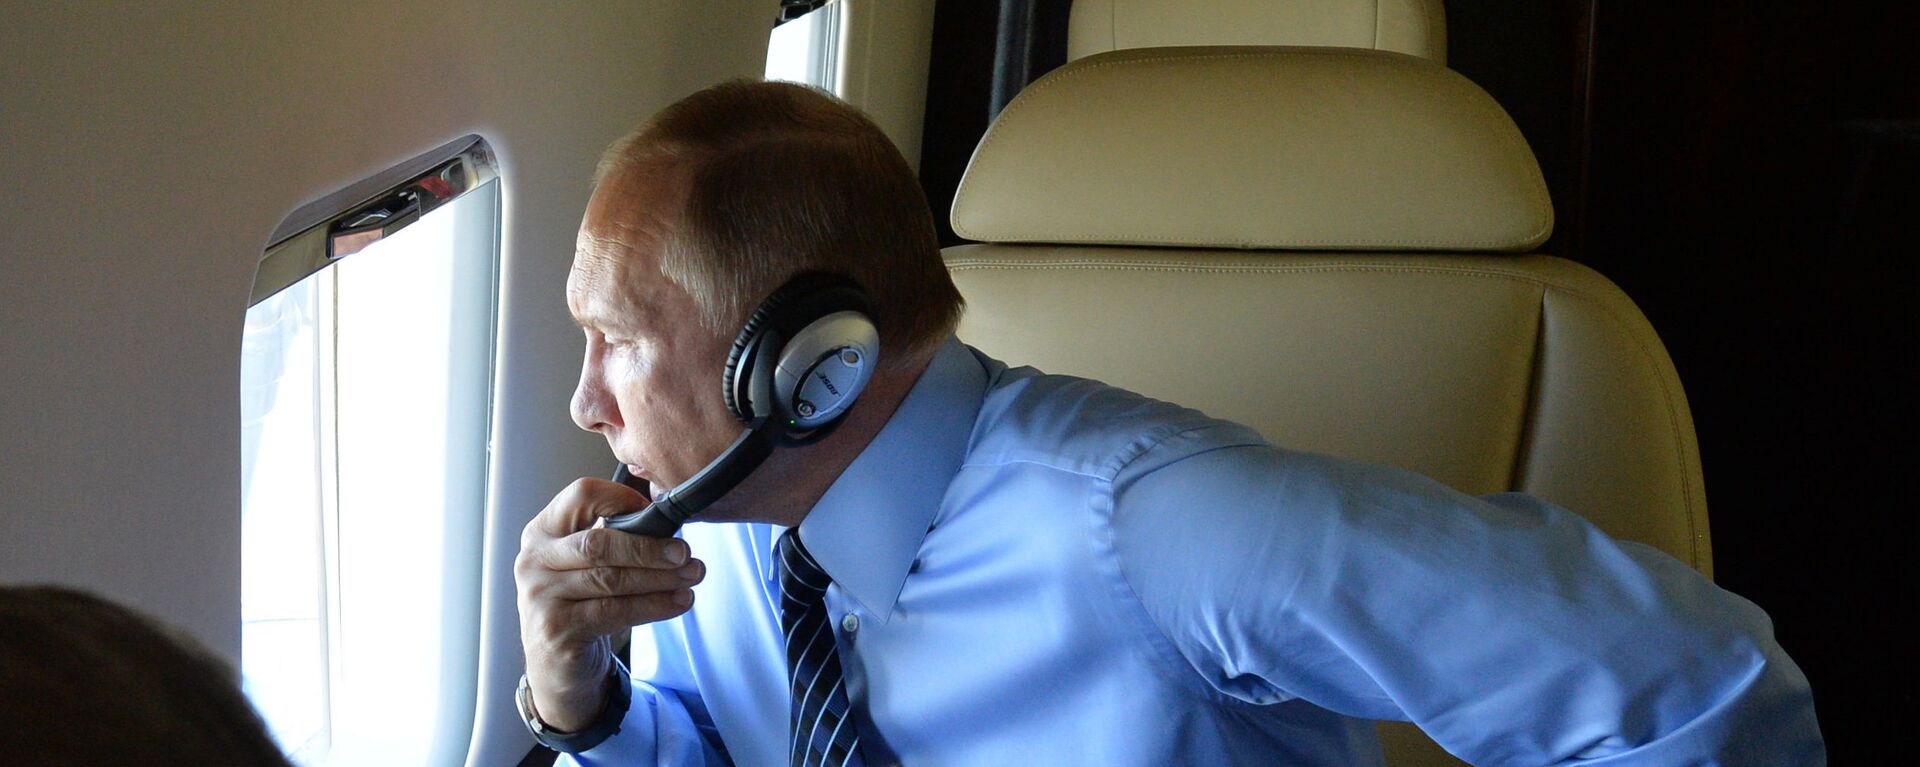 Председник Русије Владимир Путин у авиону - Sputnik Србија, 1920, 18.11.2018